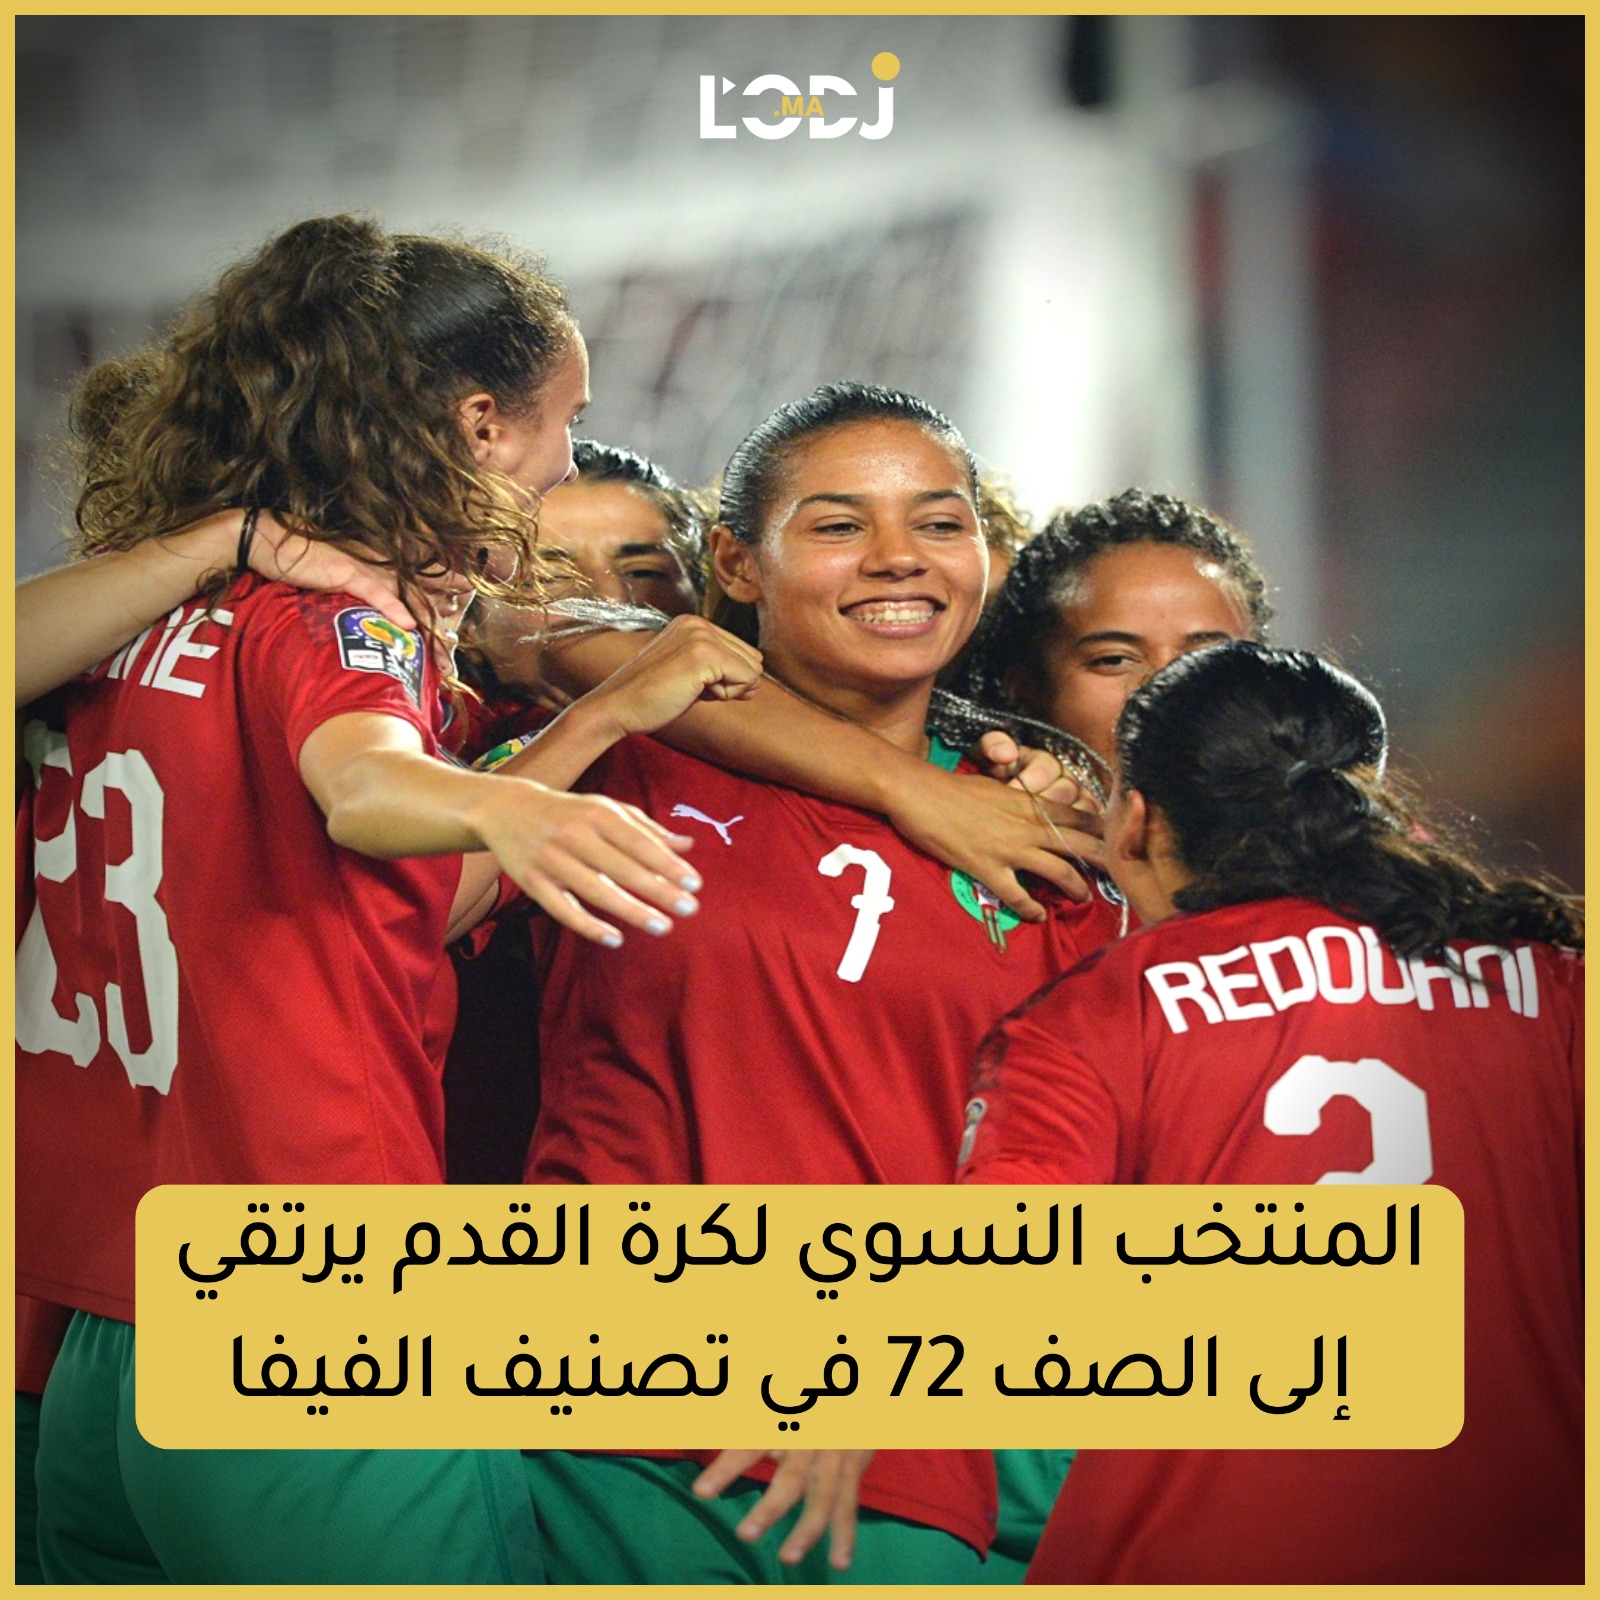 المنتخب النسوي لكرة القدم يرتقي إلى الصف 72 في تصنيف الفيفا